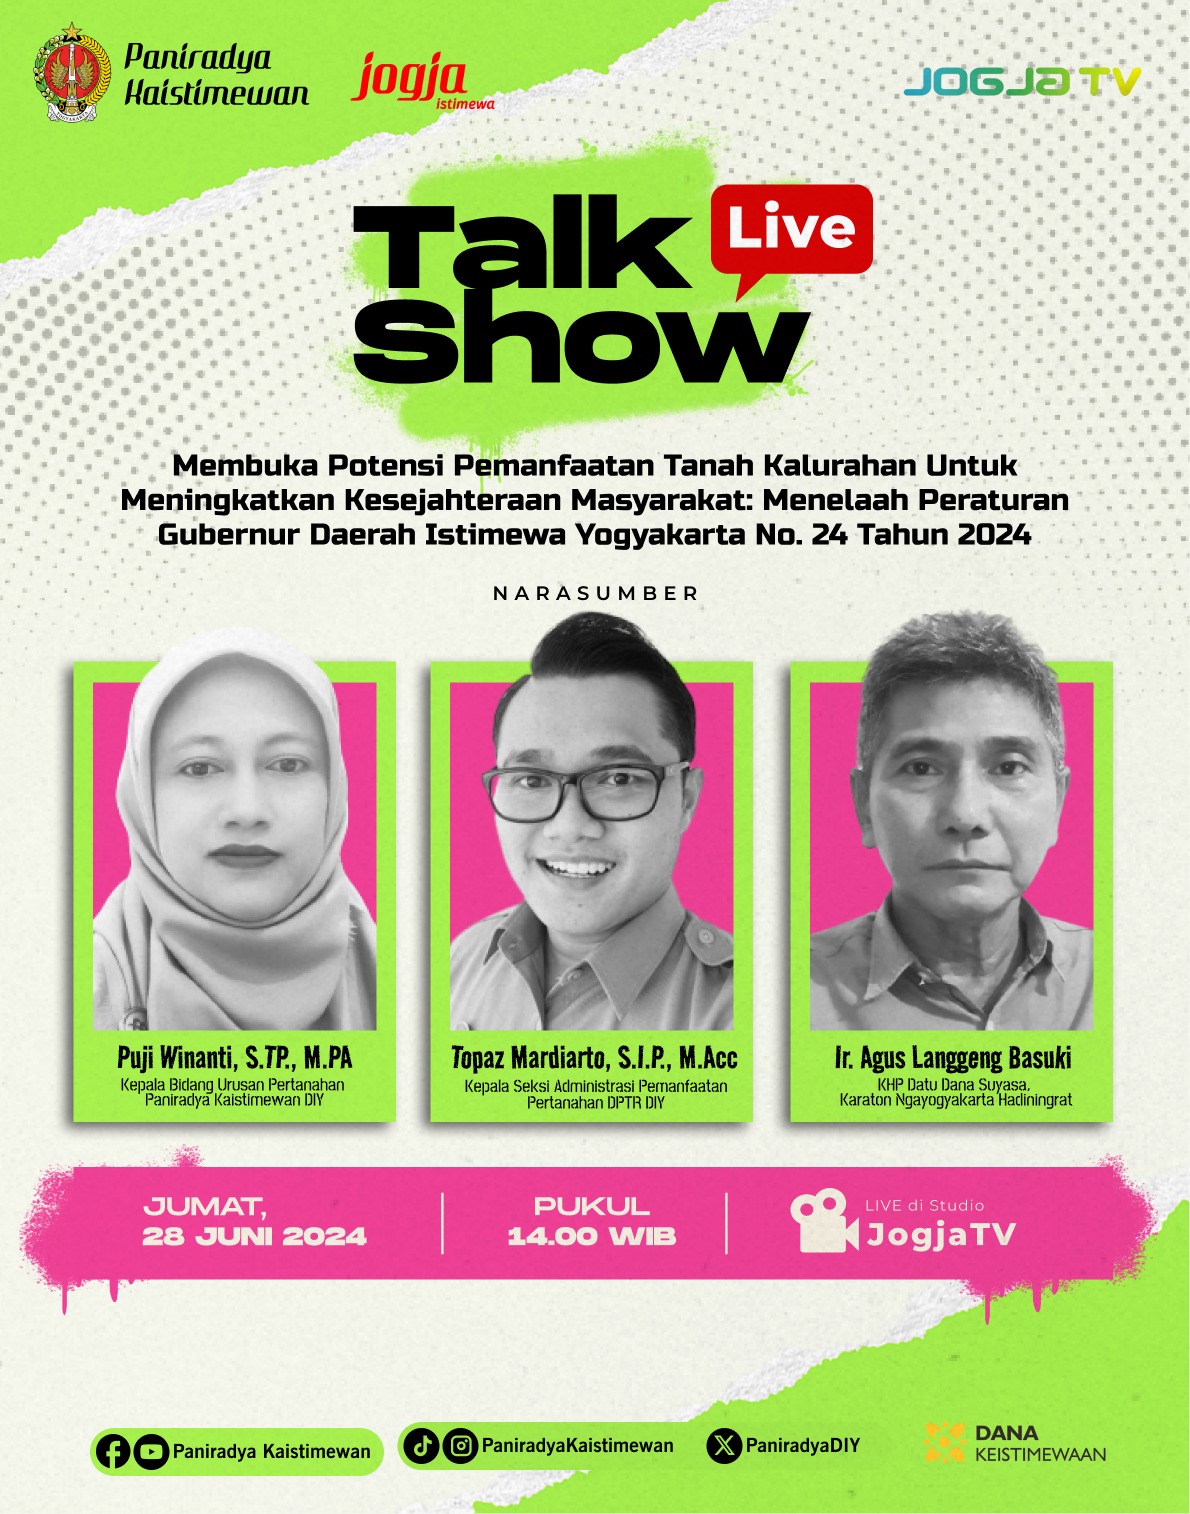 Live Talkshow - Membuka Potensi Pemanfaatan Tanah Kalurahan untuk Meningkatkan Kesejahteraan Masyarakat: Menelaah Peraturan Gubernur Daerah Istimewa Yogyakarta No. 24 Tahun 2024